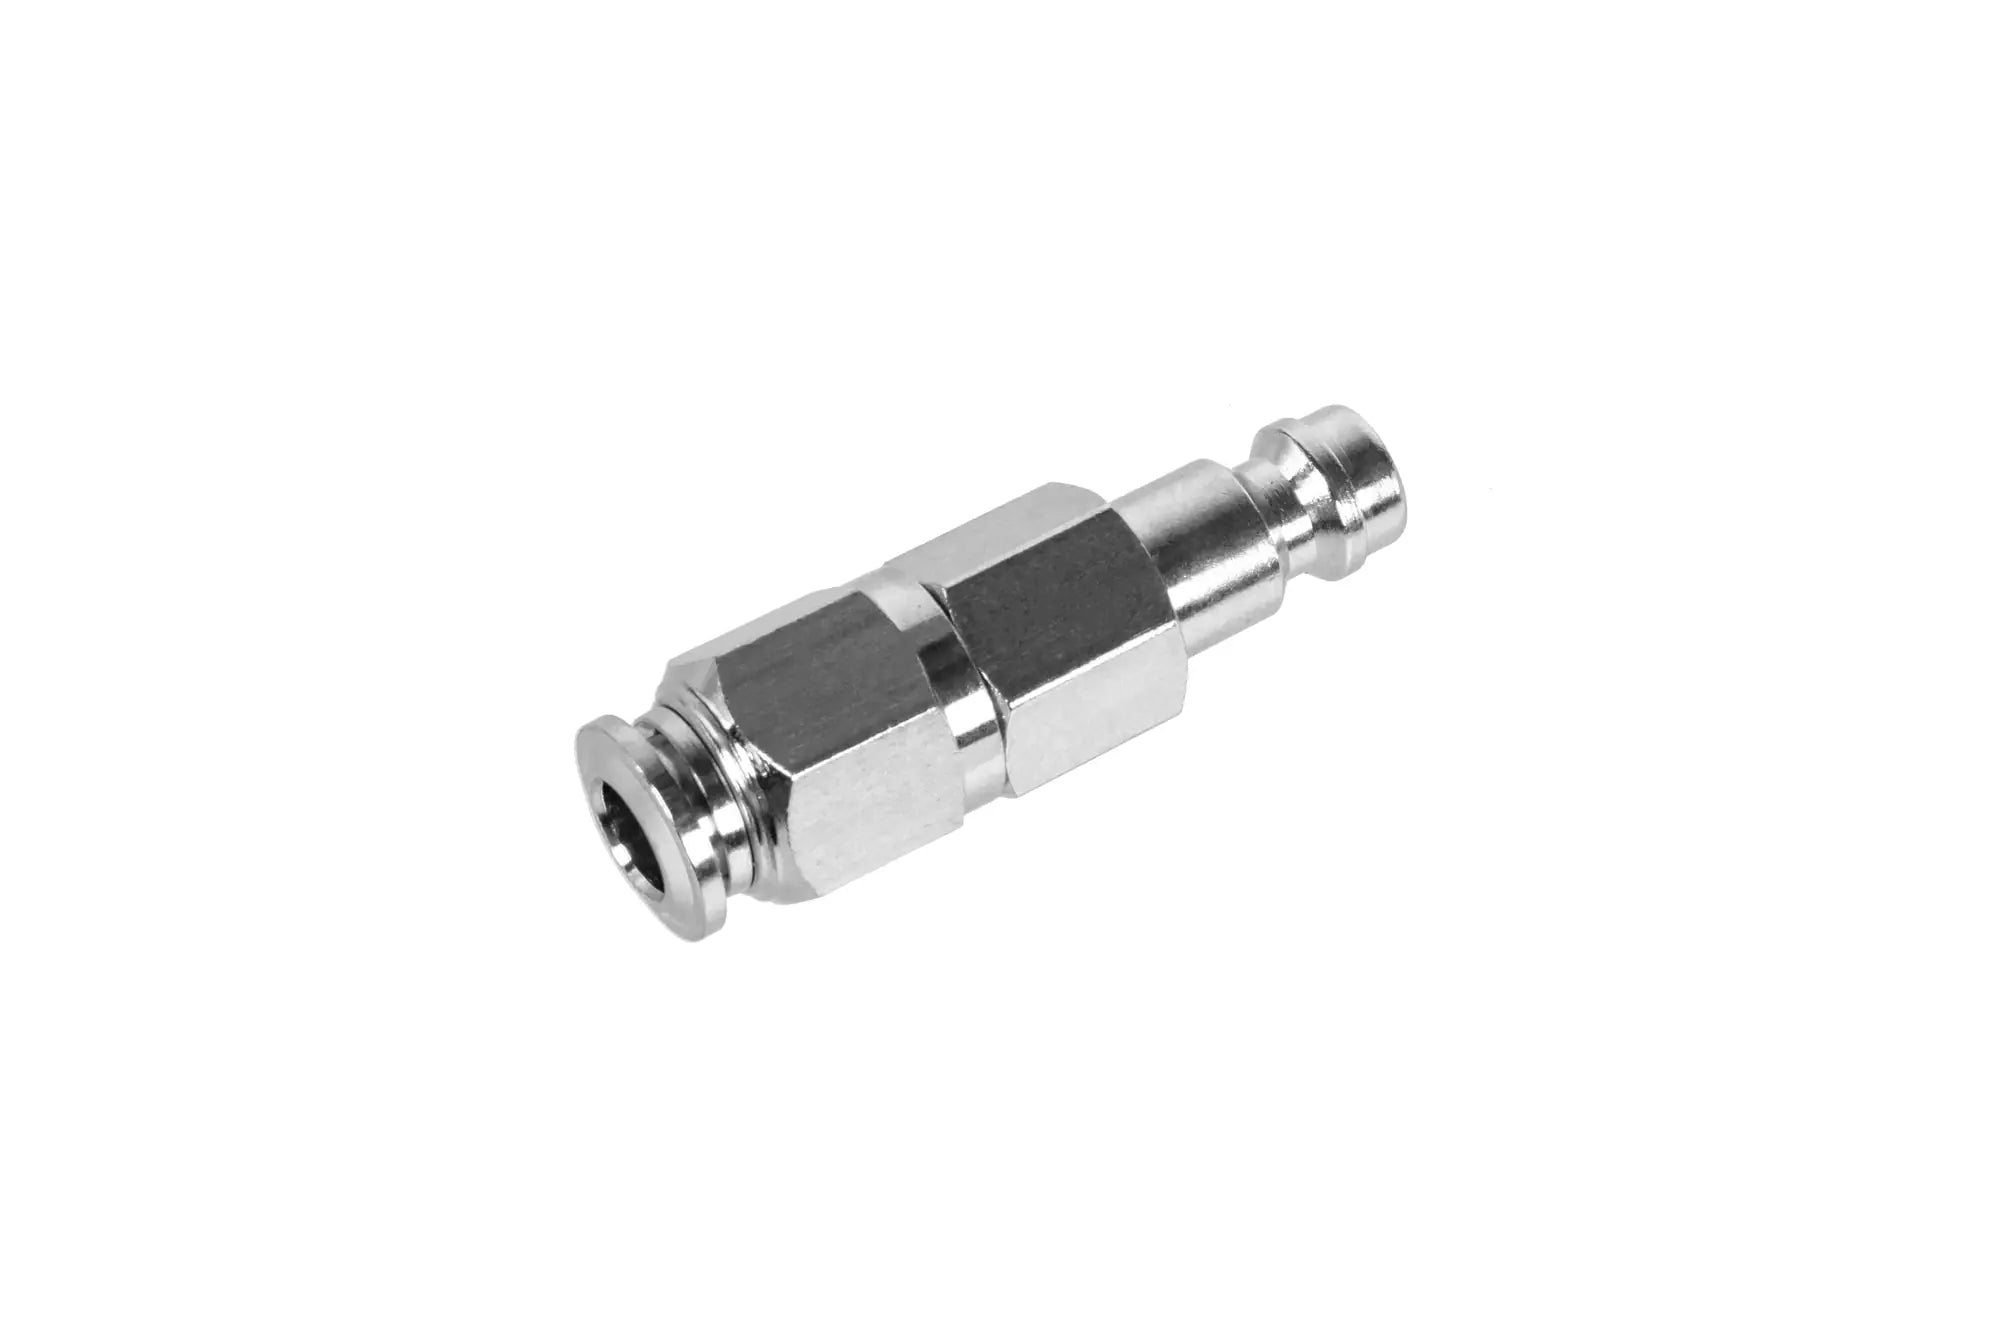 6 mm coupling for HPA motor (EU standard)